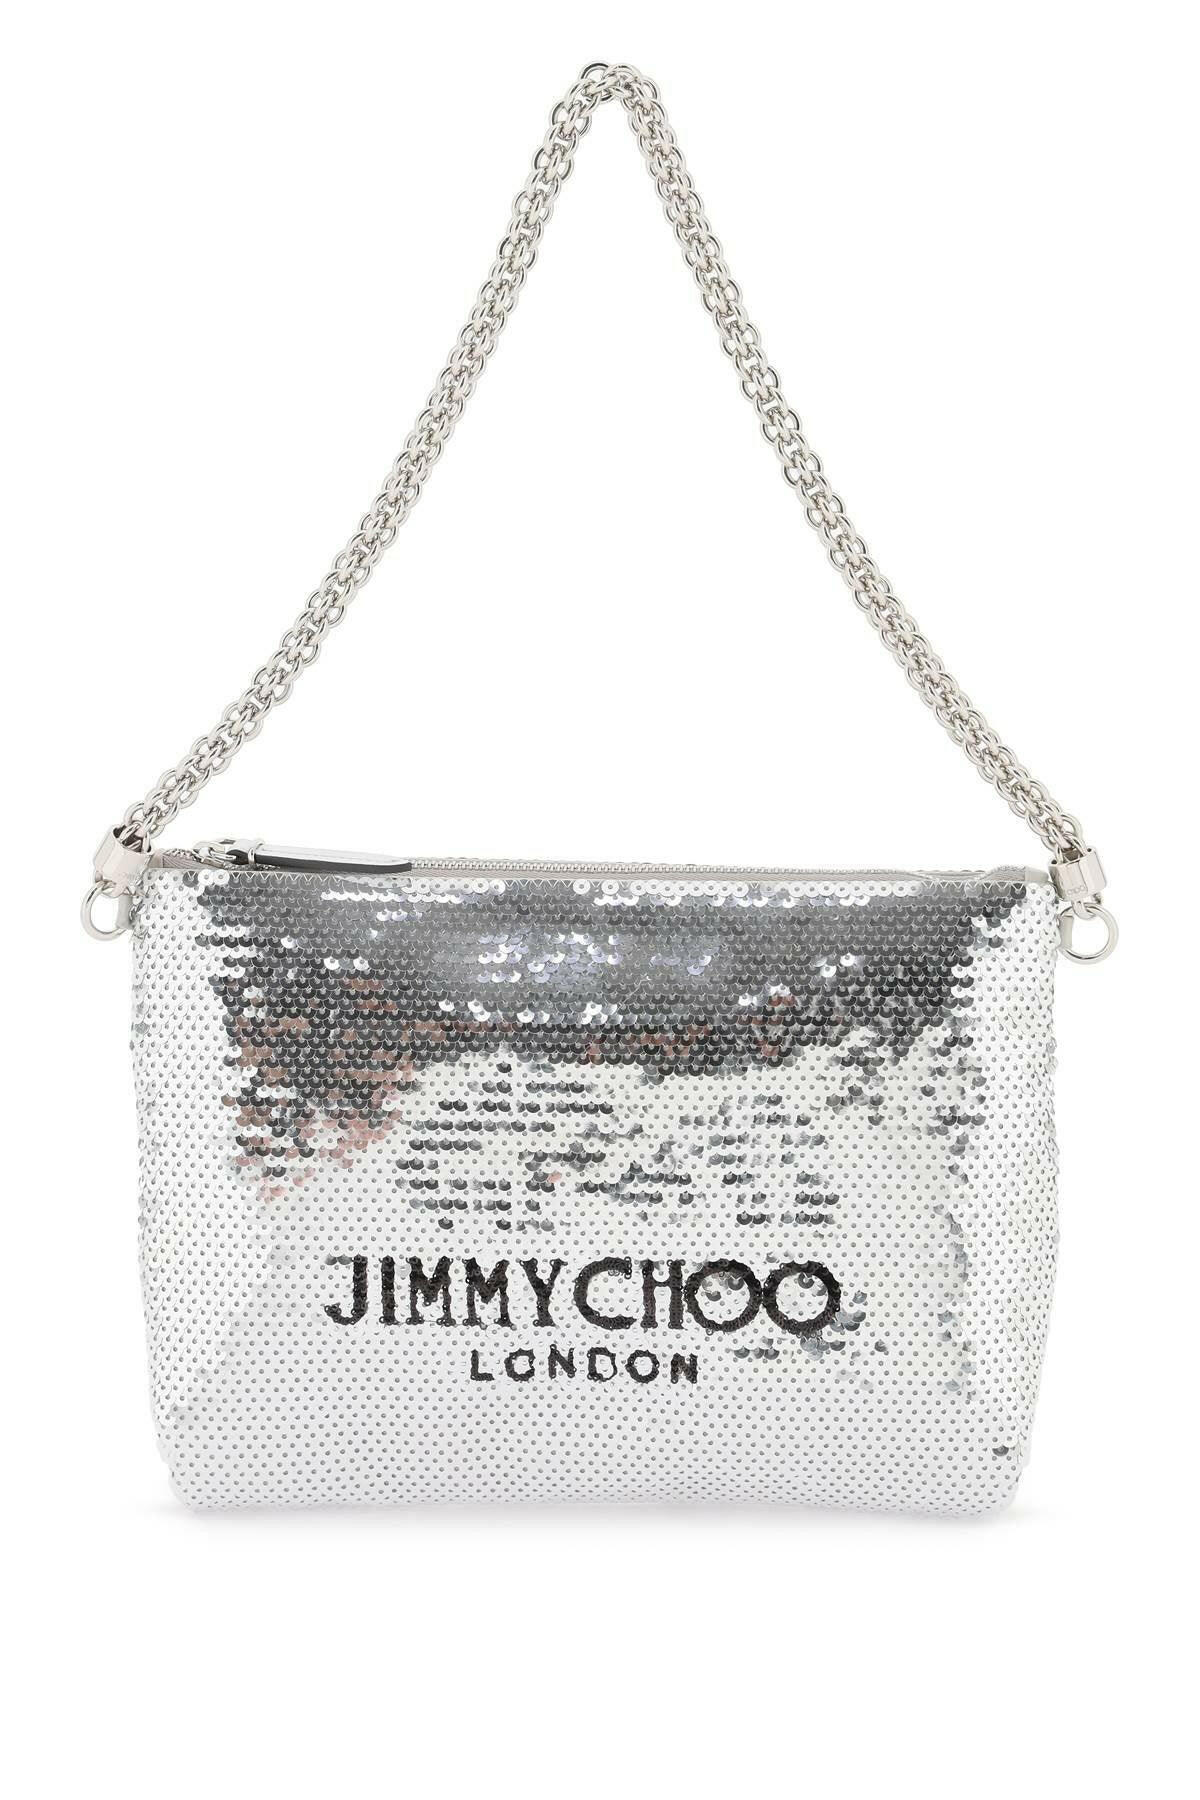 Jimmy Choo Silver Callie Sequin Shoulder Bag - JOHN JULIA